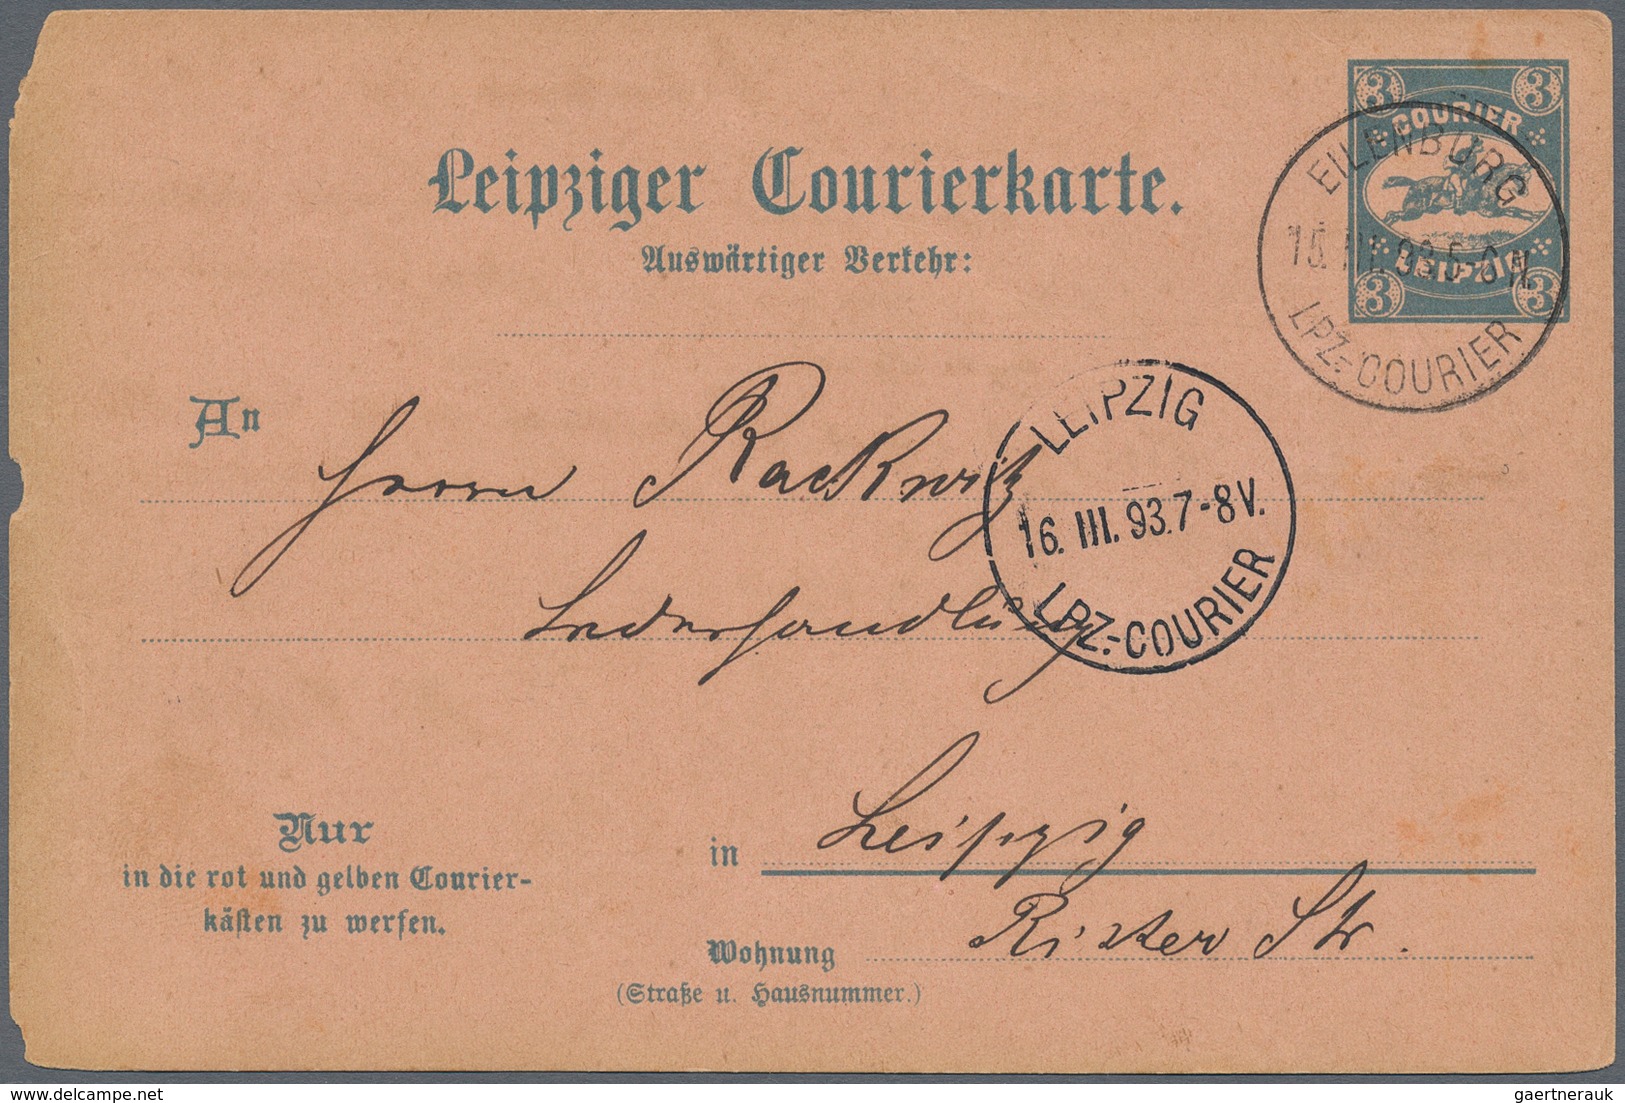 Deutsches Reich - Privatpost (Stadtpost): LEIPZIG: Courier, umfangreiche Sammlung von Marken, Briefe